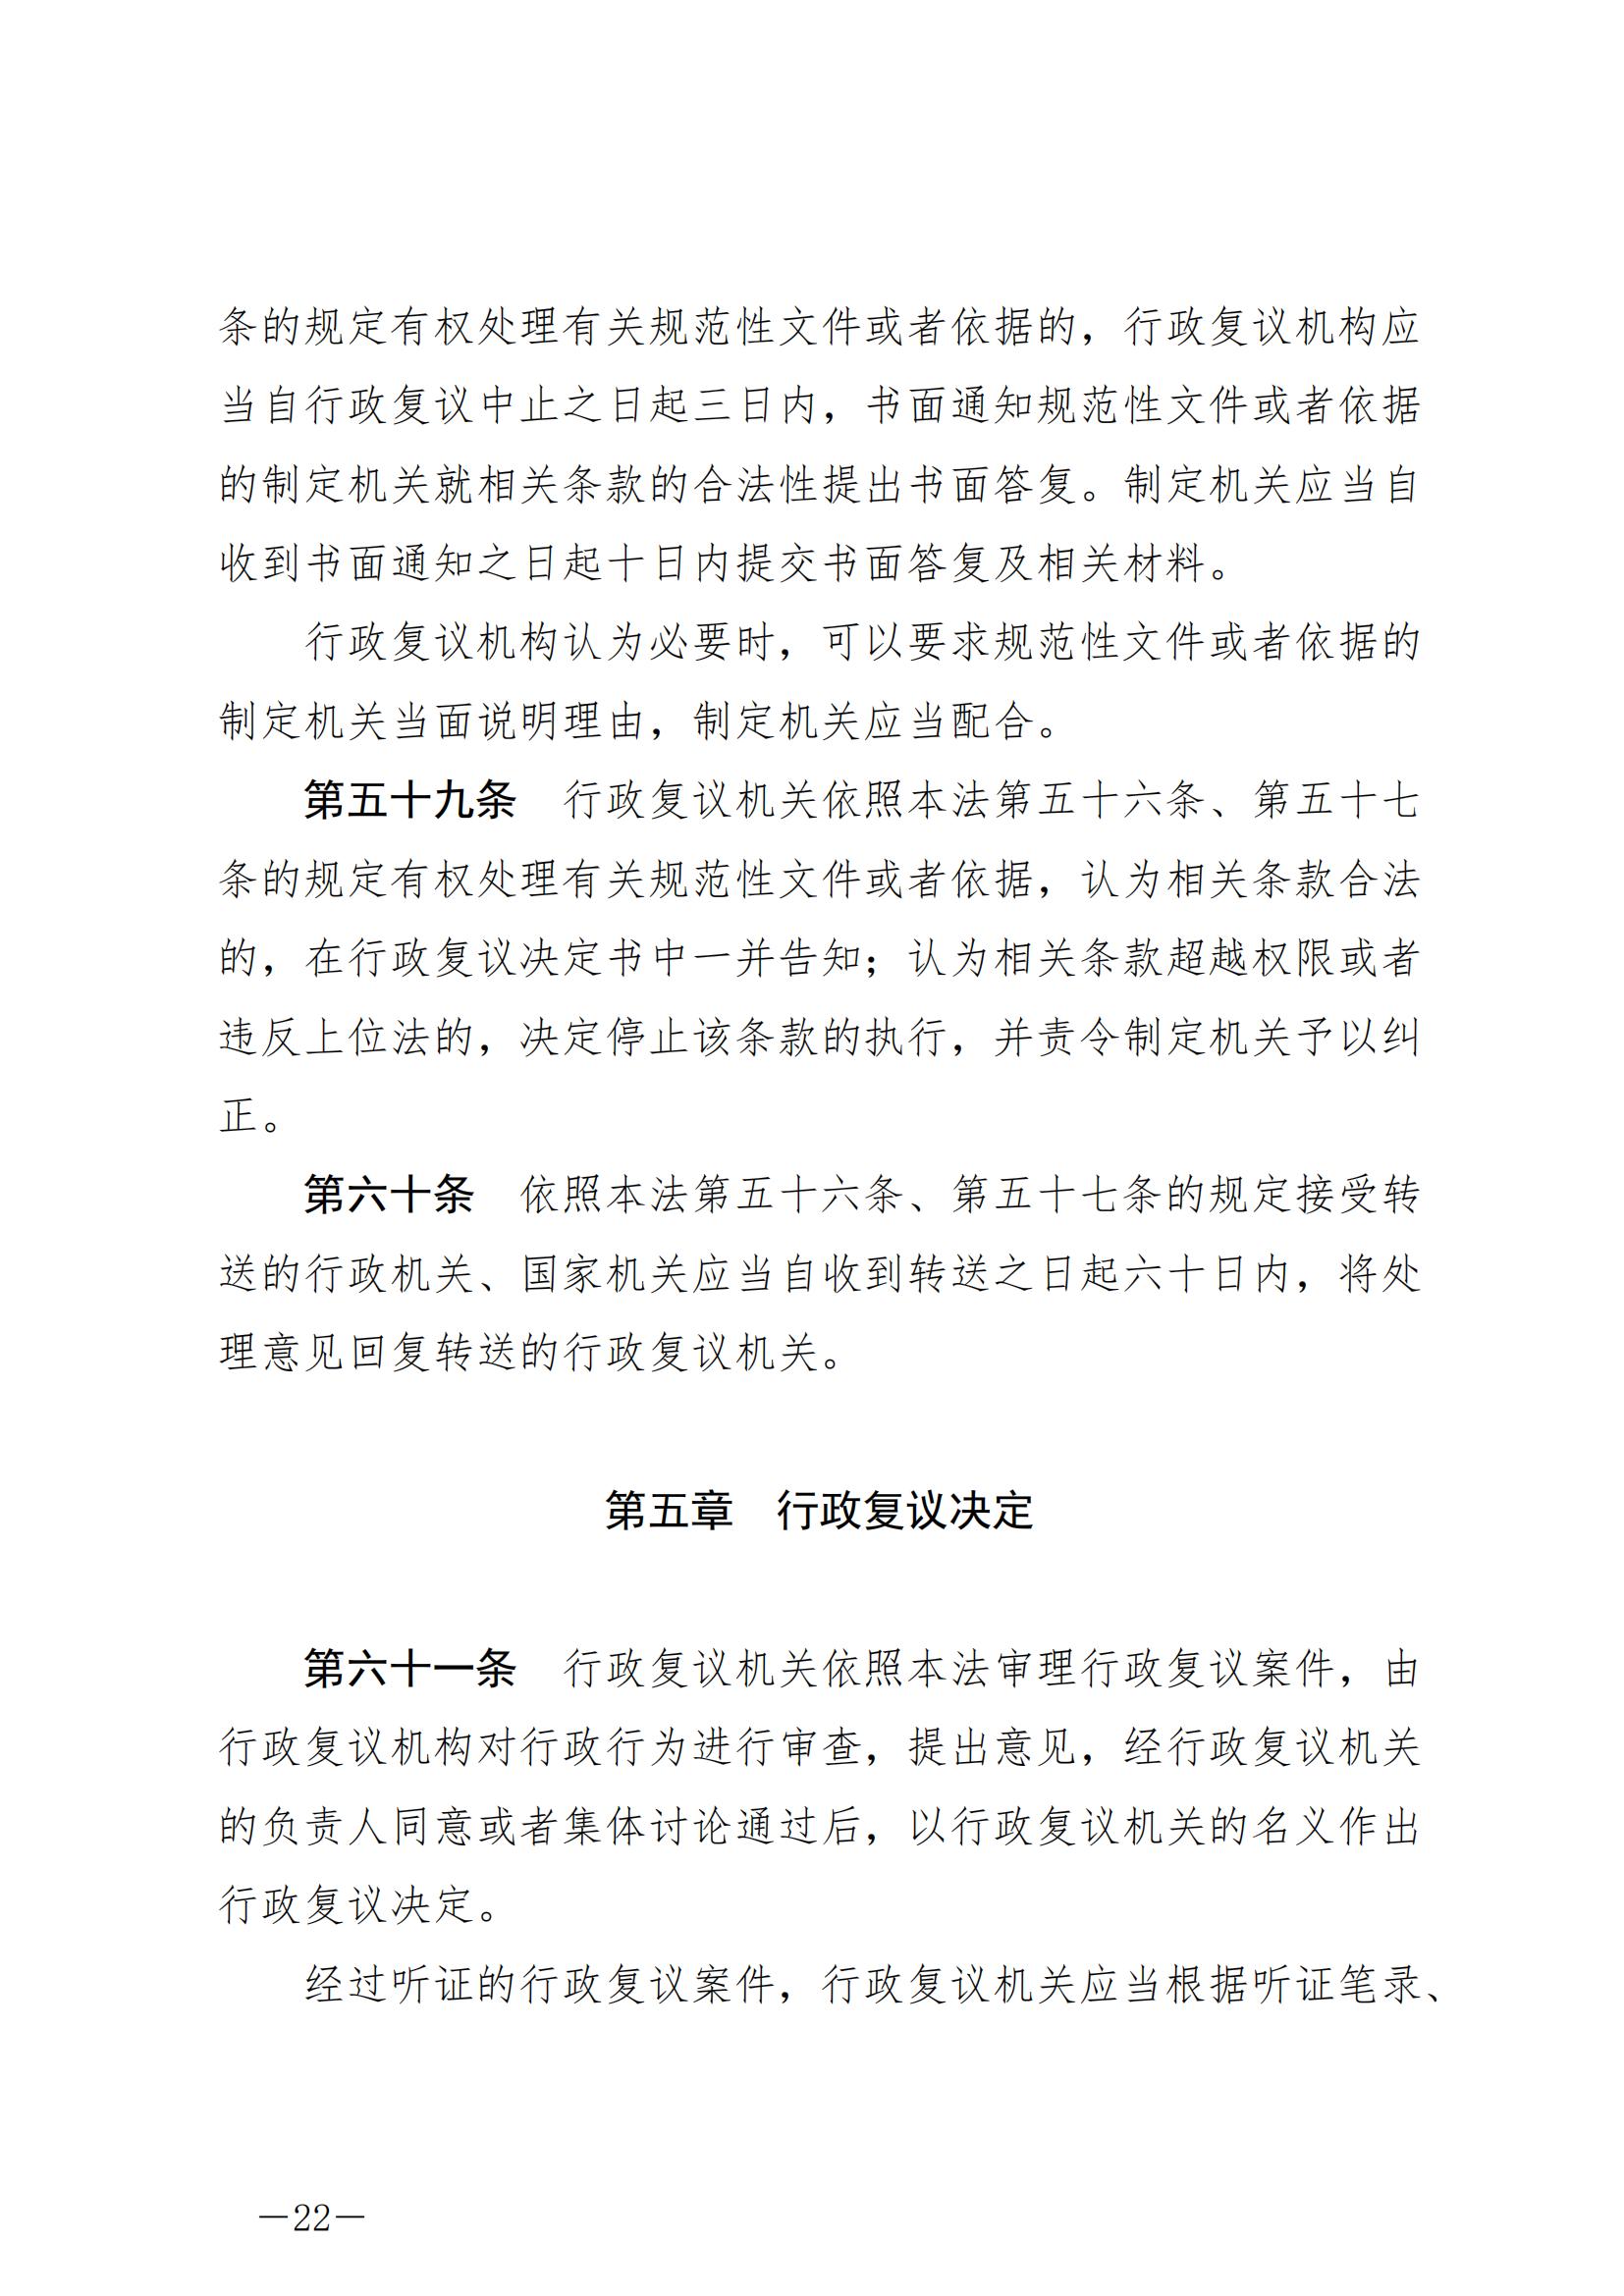 《中华人民共和国行政复议法》_20231204154310_21.jpg